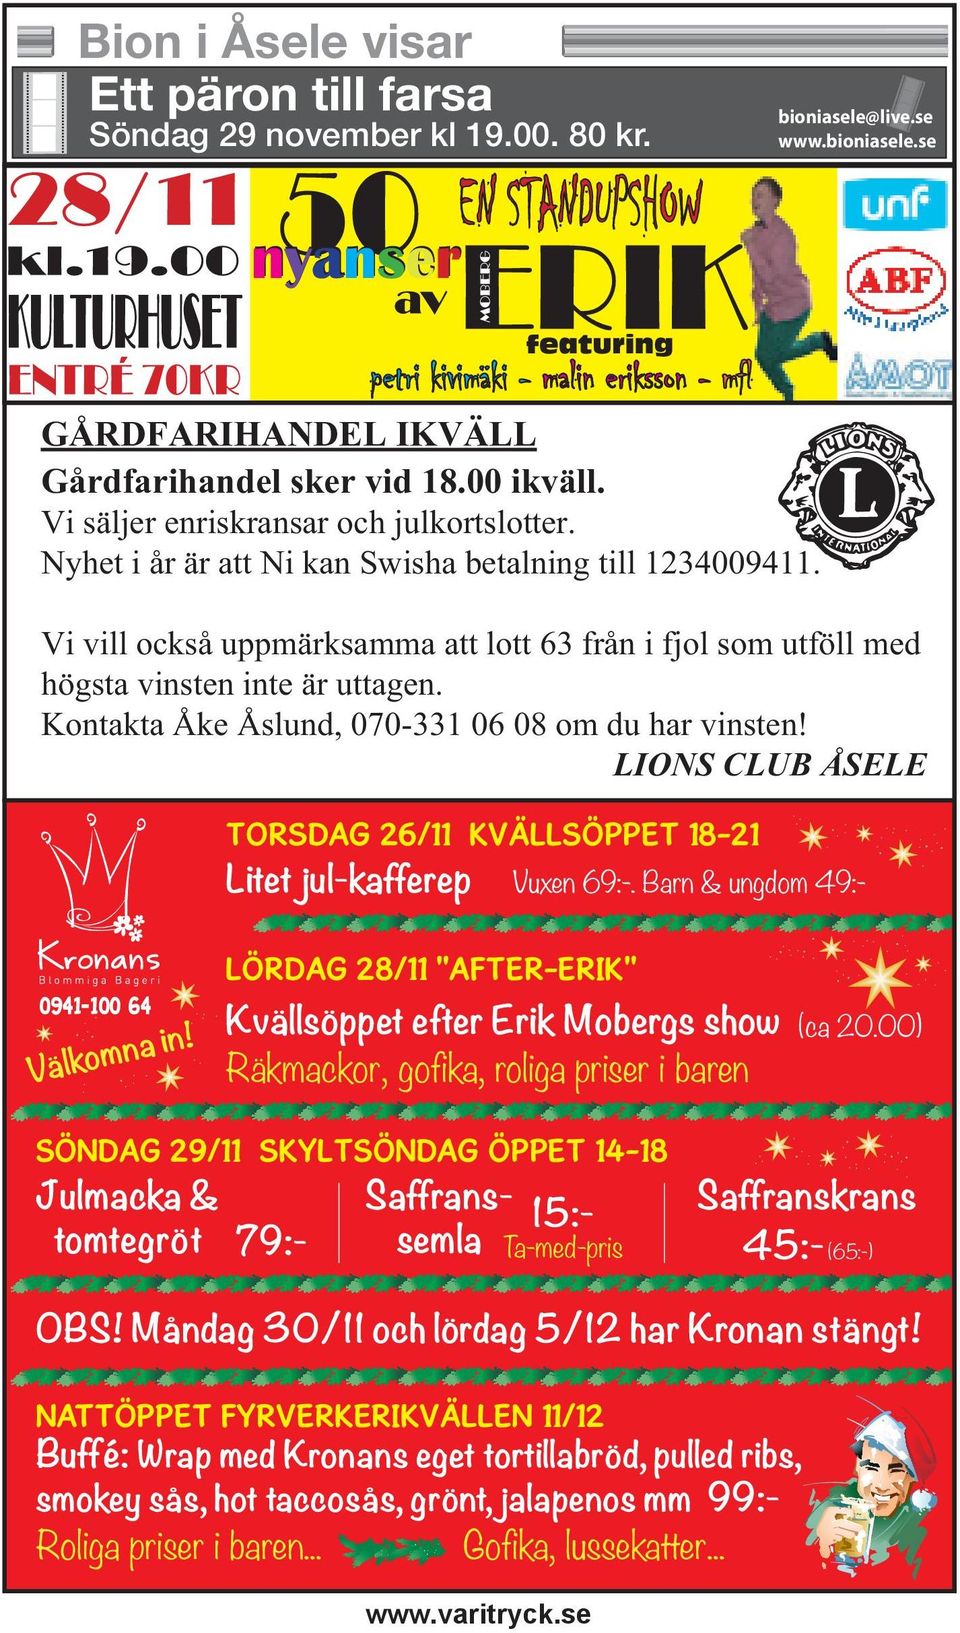 Kontakta Åke Åslund, 070-331 06 08 om du har vinsten! LIONS CLUB ÅSELE TORSDAG 26/11 KVÄLLSÖPPET 18-21 Litet jul-kafferep Vuxen 69:-.